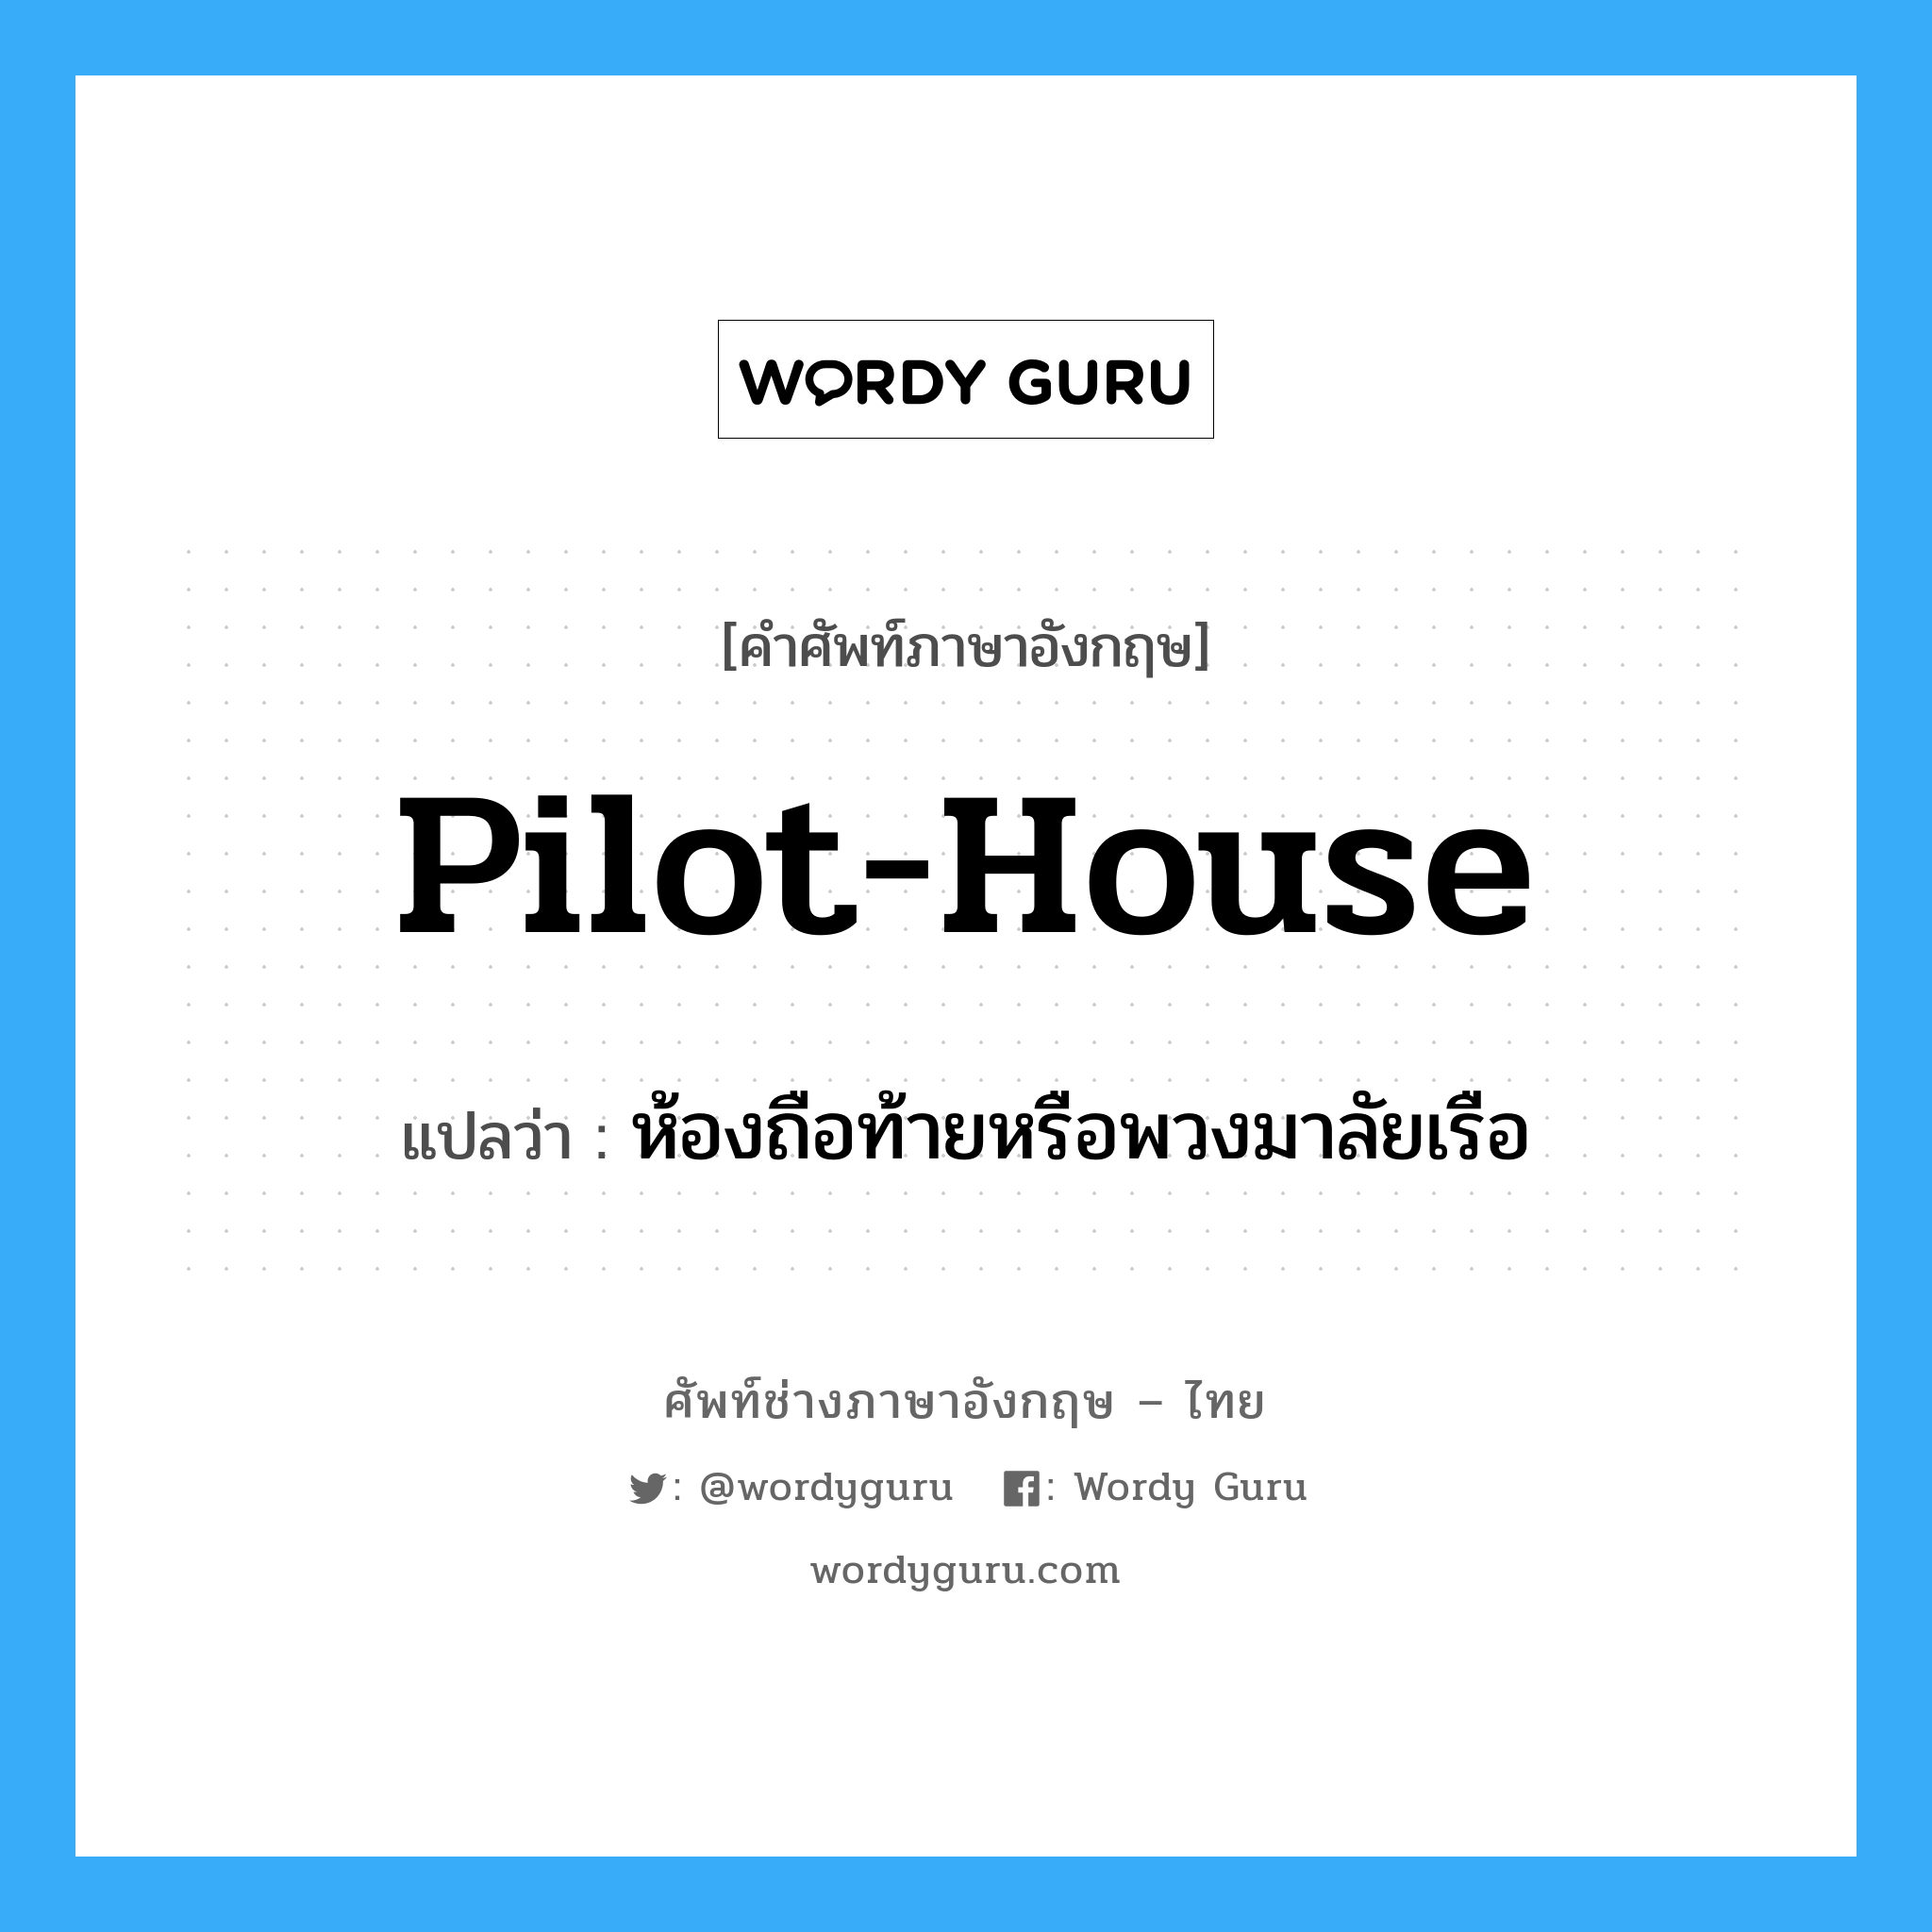 pilot-house แปลว่า?, คำศัพท์ช่างภาษาอังกฤษ - ไทย pilot-house คำศัพท์ภาษาอังกฤษ pilot-house แปลว่า ห้องถือท้ายหรือพวงมาลัยเรือ